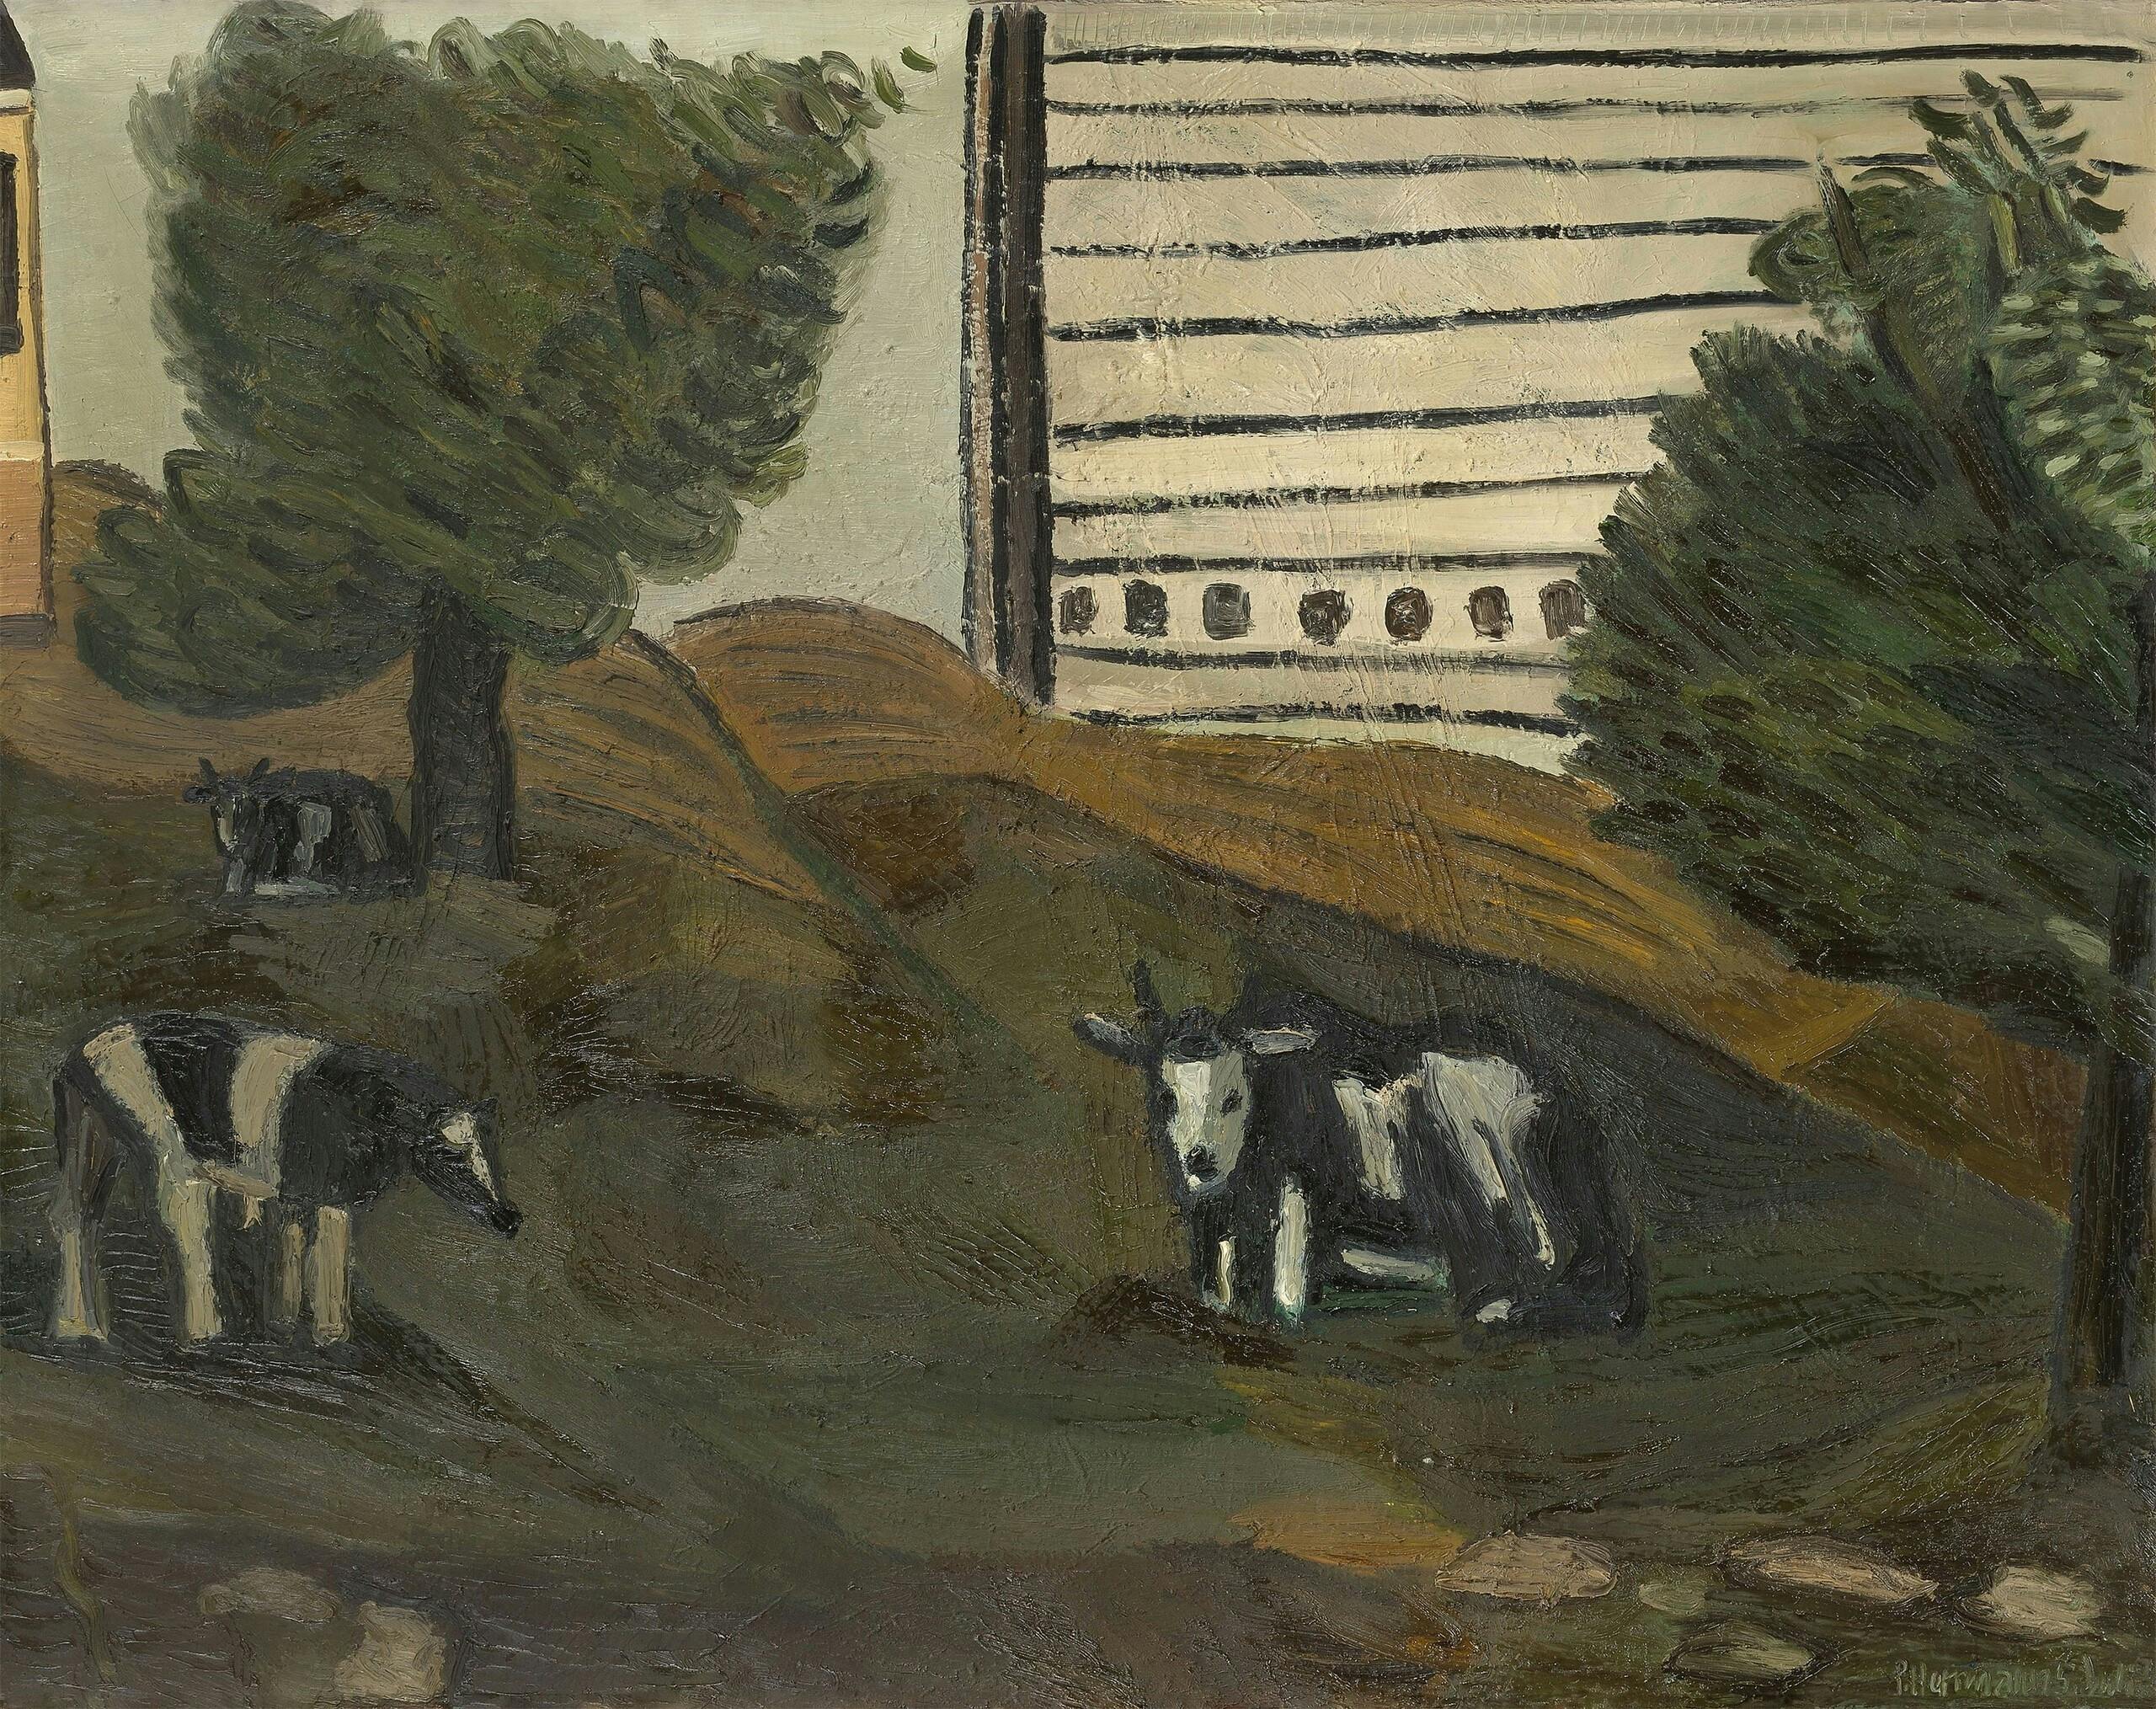 Gemälde: Auf einer hügeligen Wiese mit Bäumen grasen drei Kühe. Am Horizont ragt ein riesiges Hochhaus empor, das durch einfache Pinselstriche angedeutet ist.